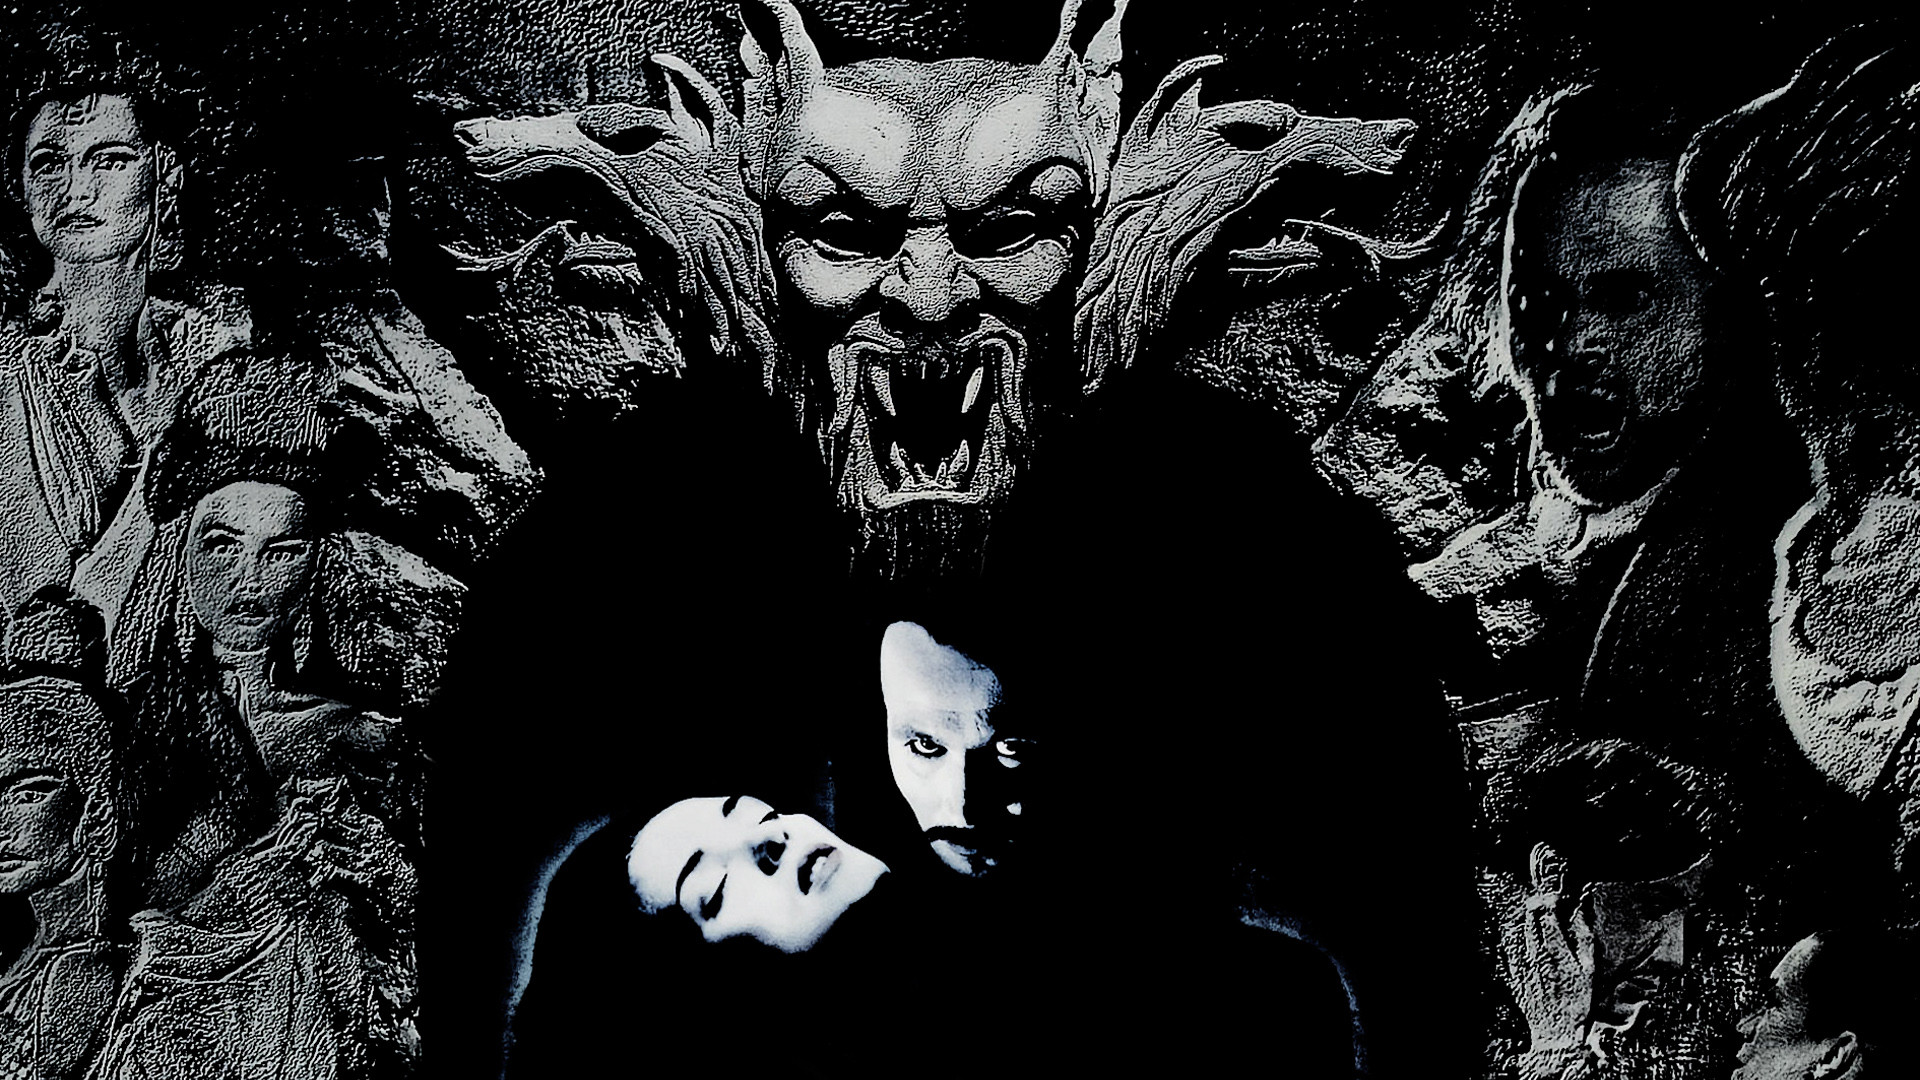 Bram Stoker's Dracula 1992